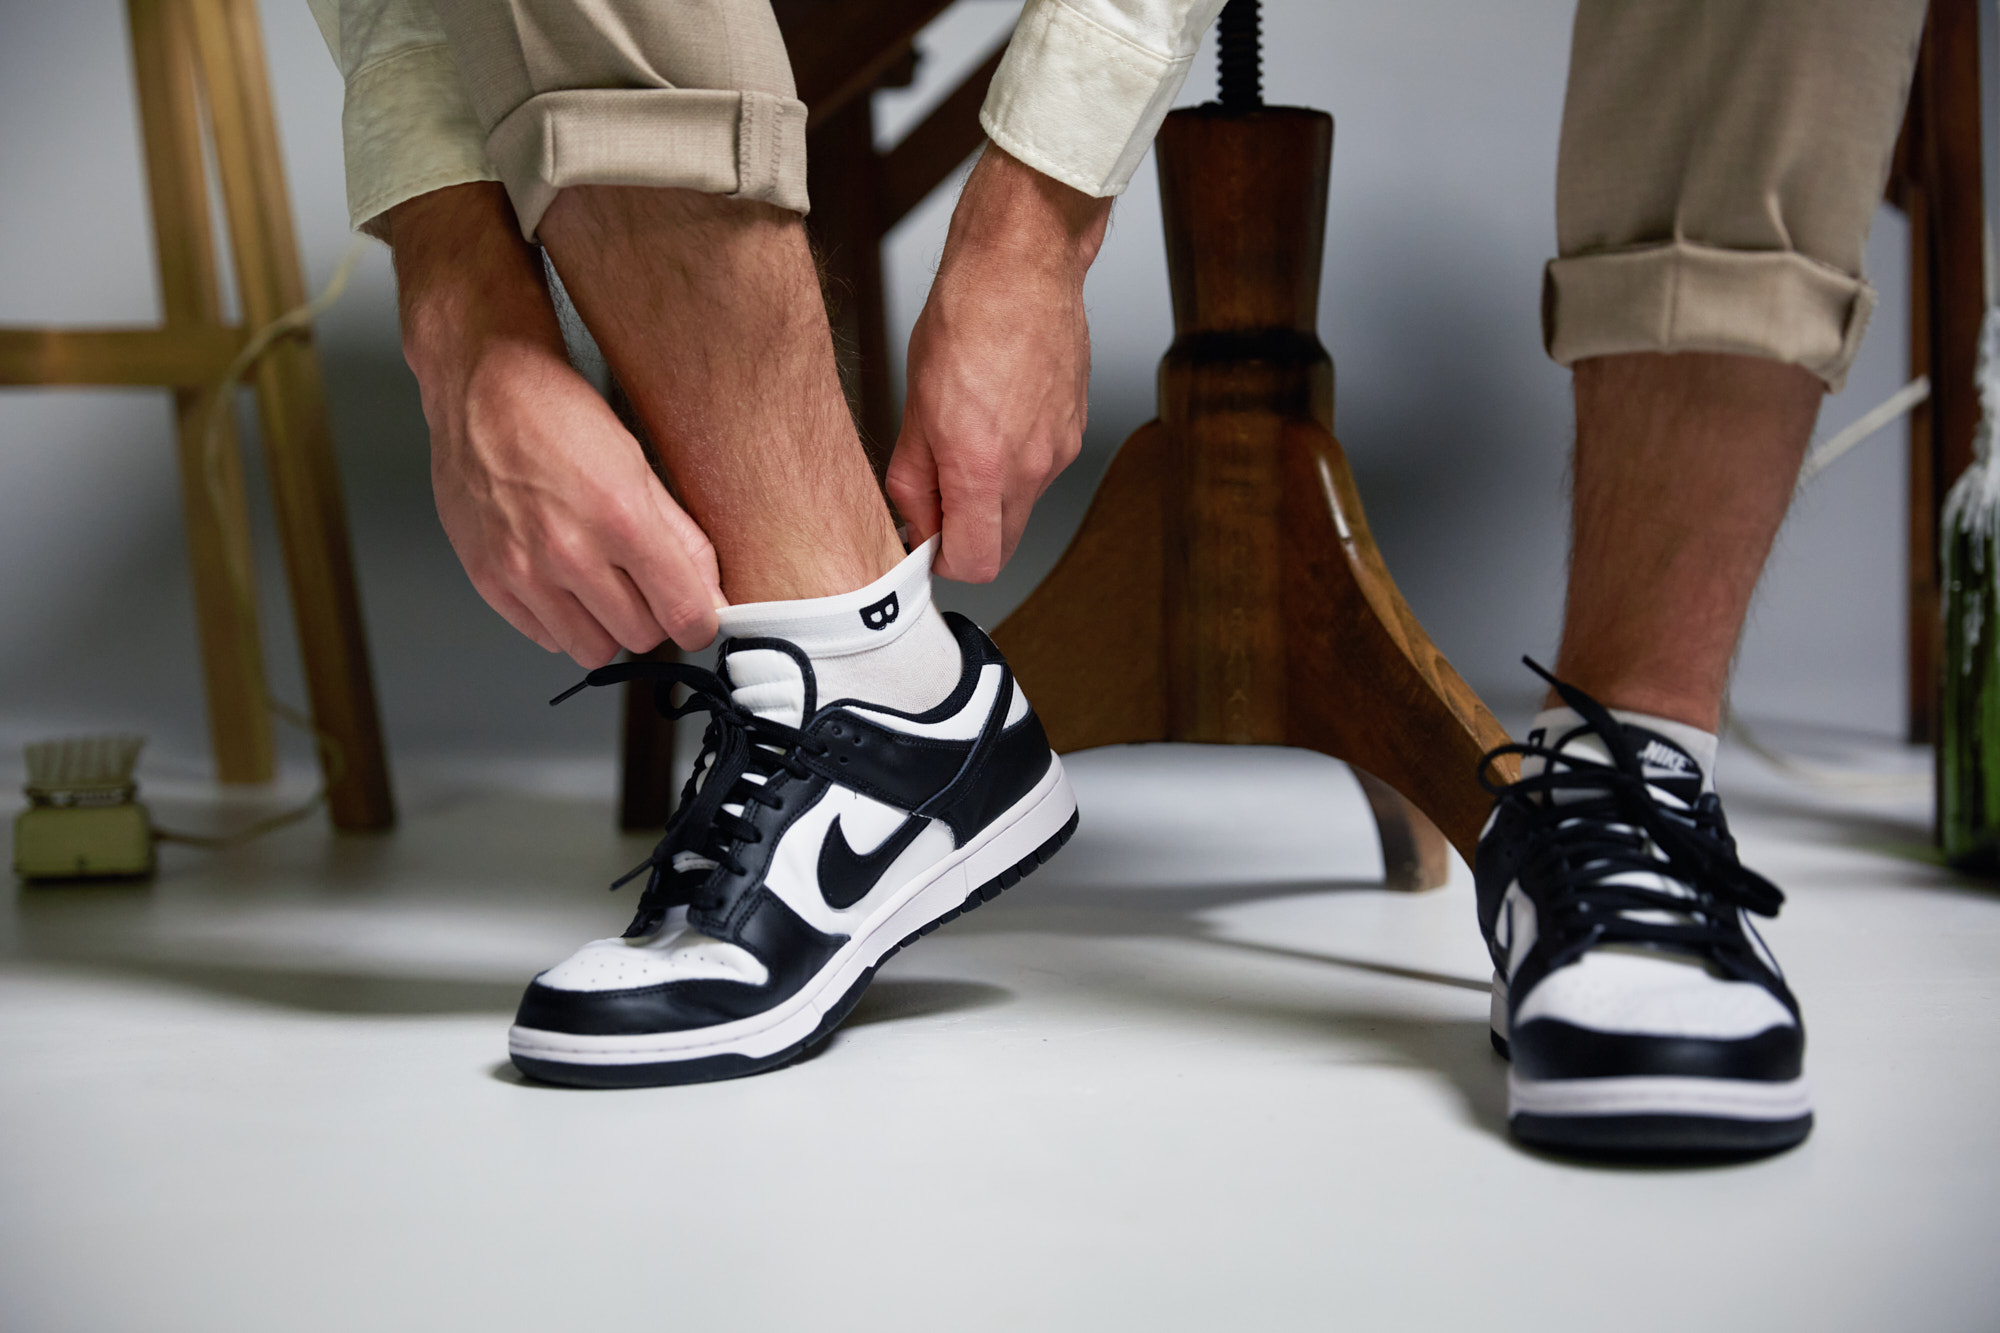 Plan-B's Origin sneakersok in gecombineerd met Nike schoen Dunk Low